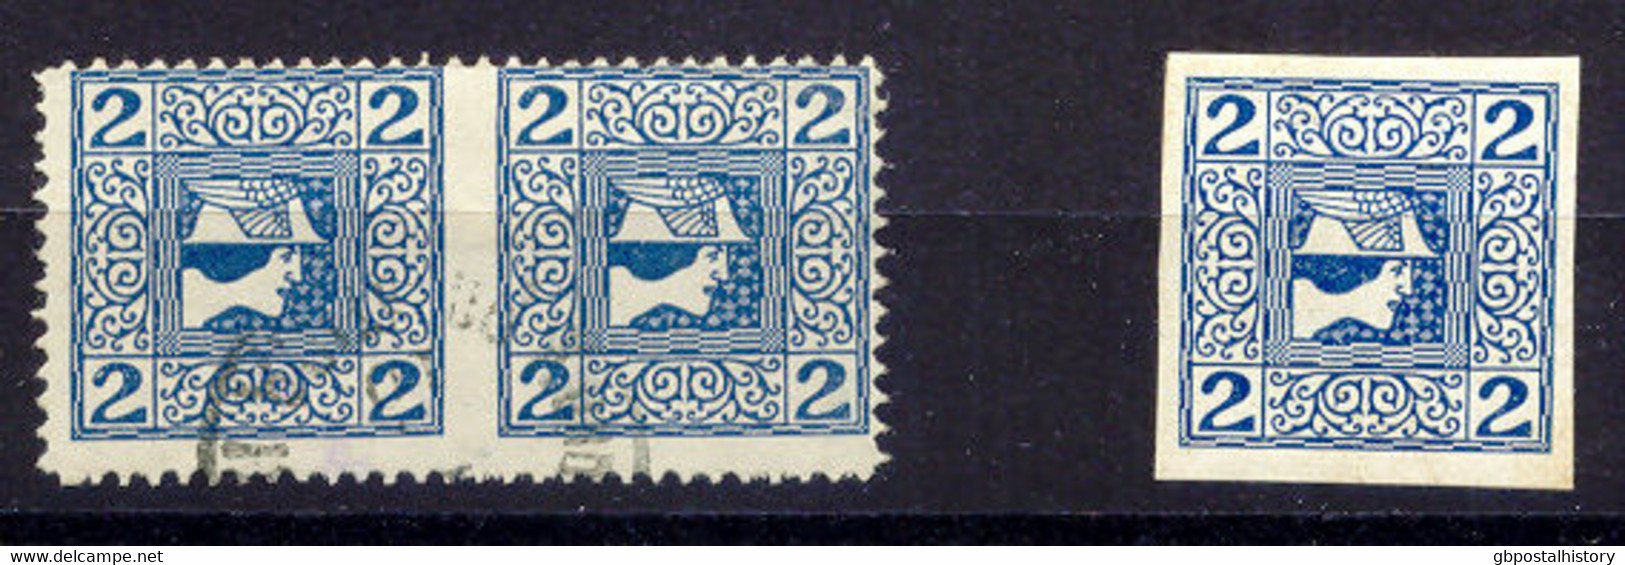 ÖSTERREICH 1908 2H Zeitungsmarke Privat Gezähnt Paar (11 1/2) Mitte Ungezähnt - Used Stamps